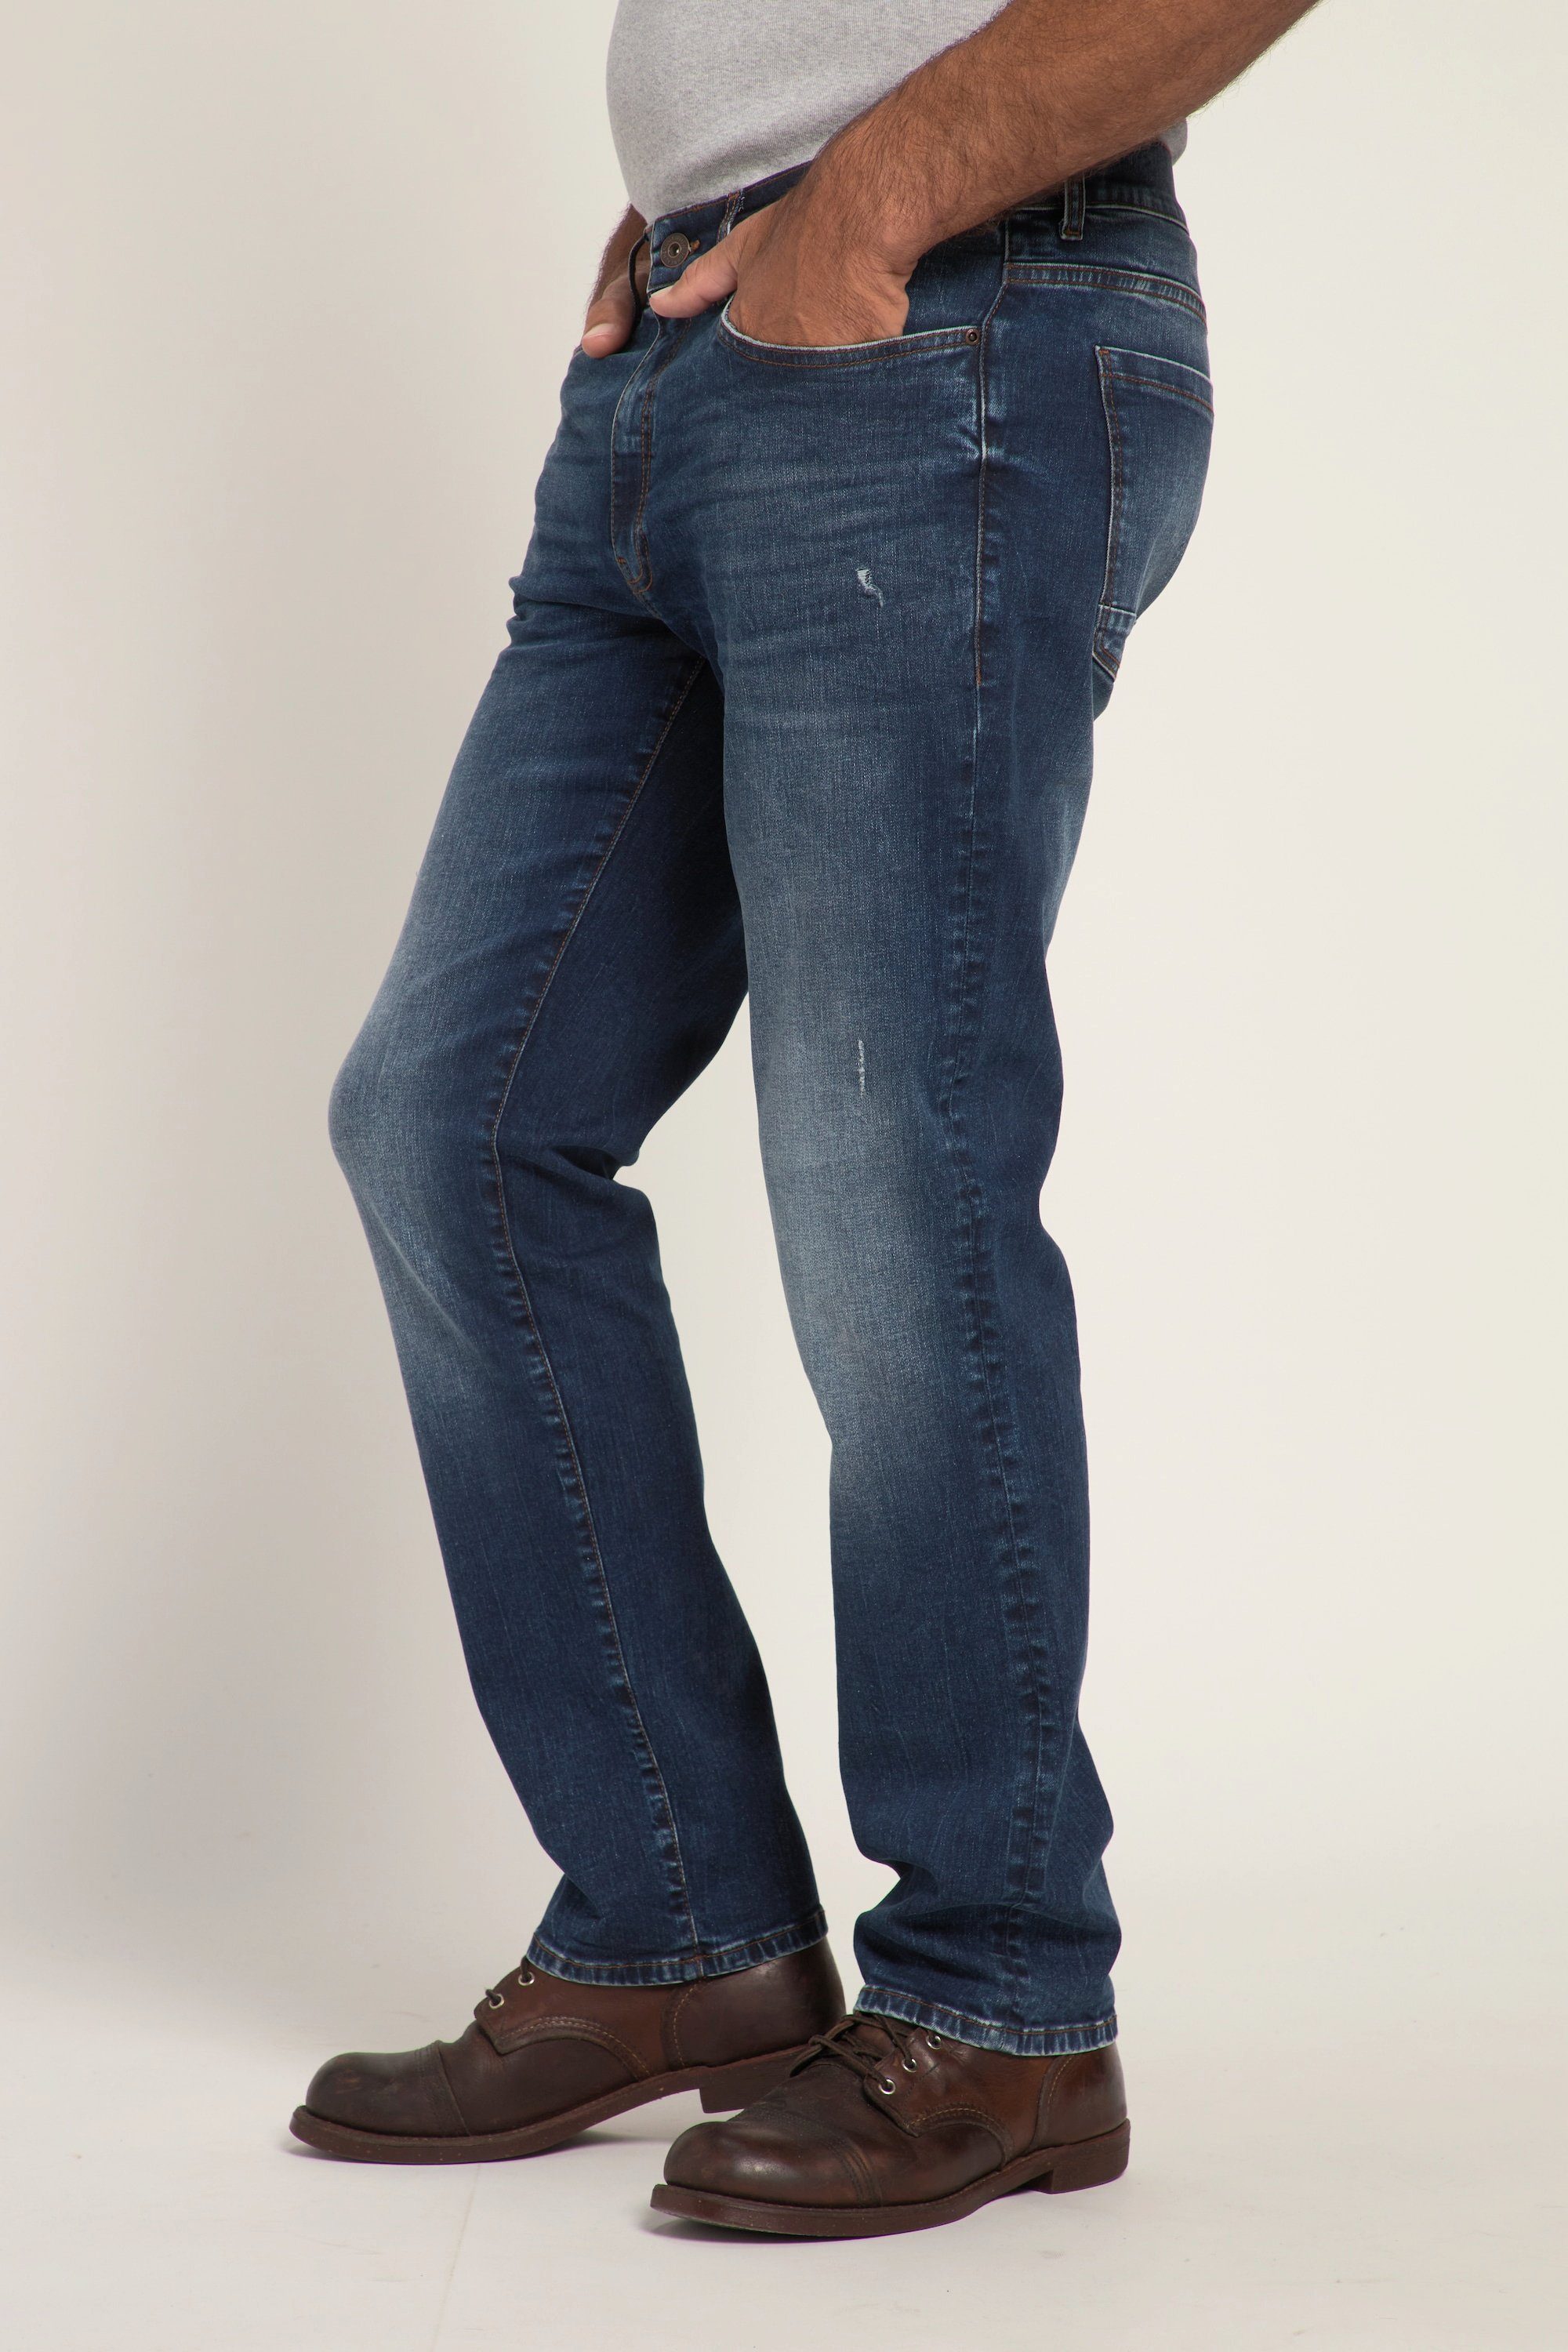 Jeans Look Denim FLEXNAMIC® denim 5-Pocket-Jeans blue Regular Vintage dark Fit JP1880